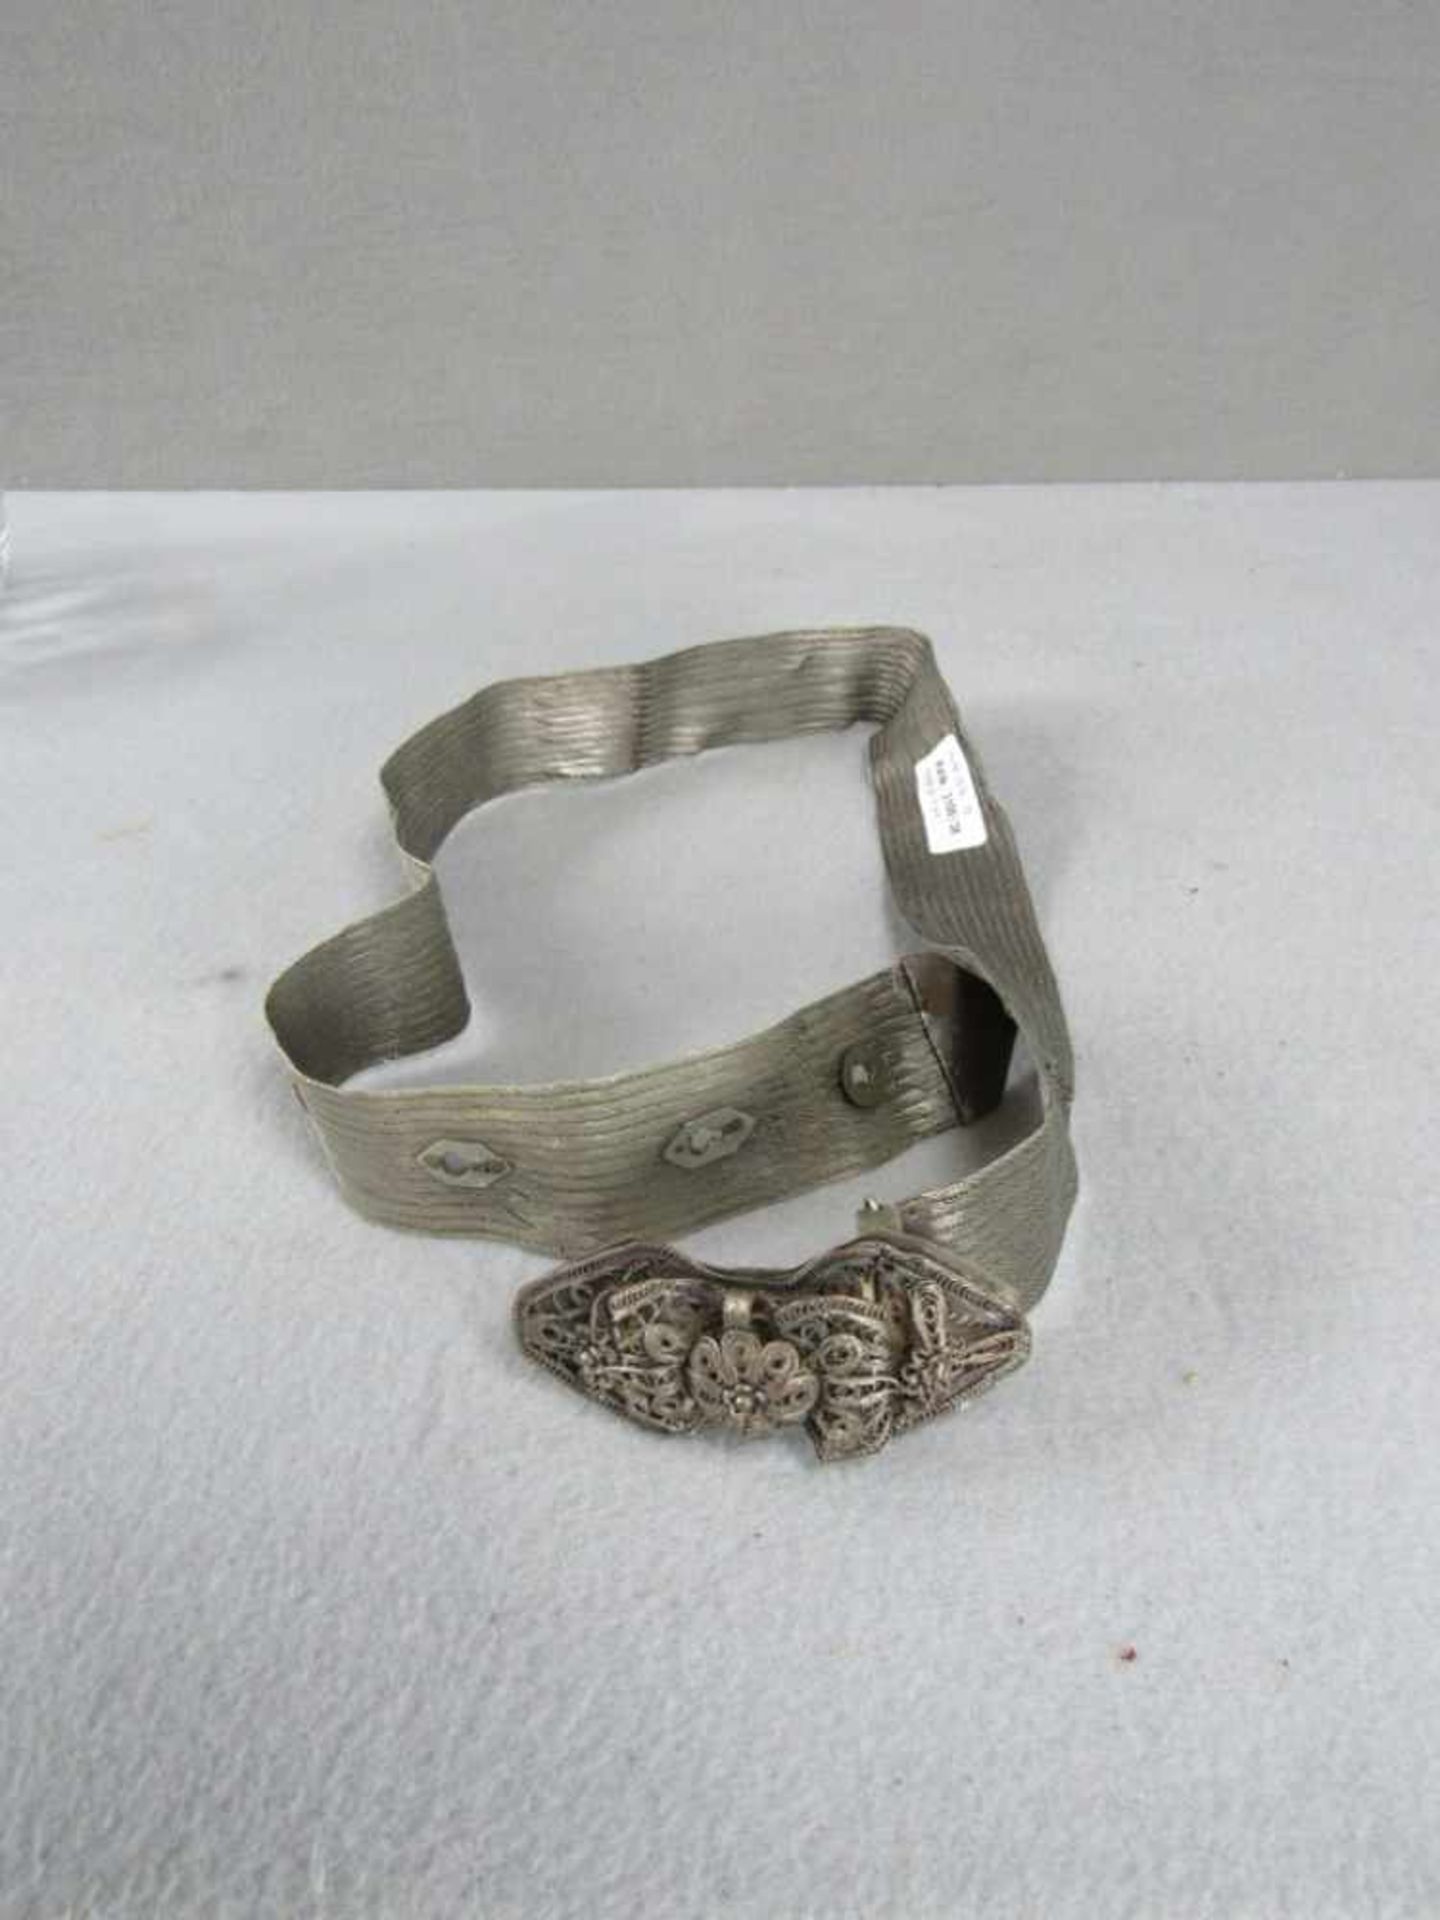 Wunderschöner Gürtel Trachtengürtel antik Durchbrucharbeit Metallgespinnst Silber? Länge ca. 105cm